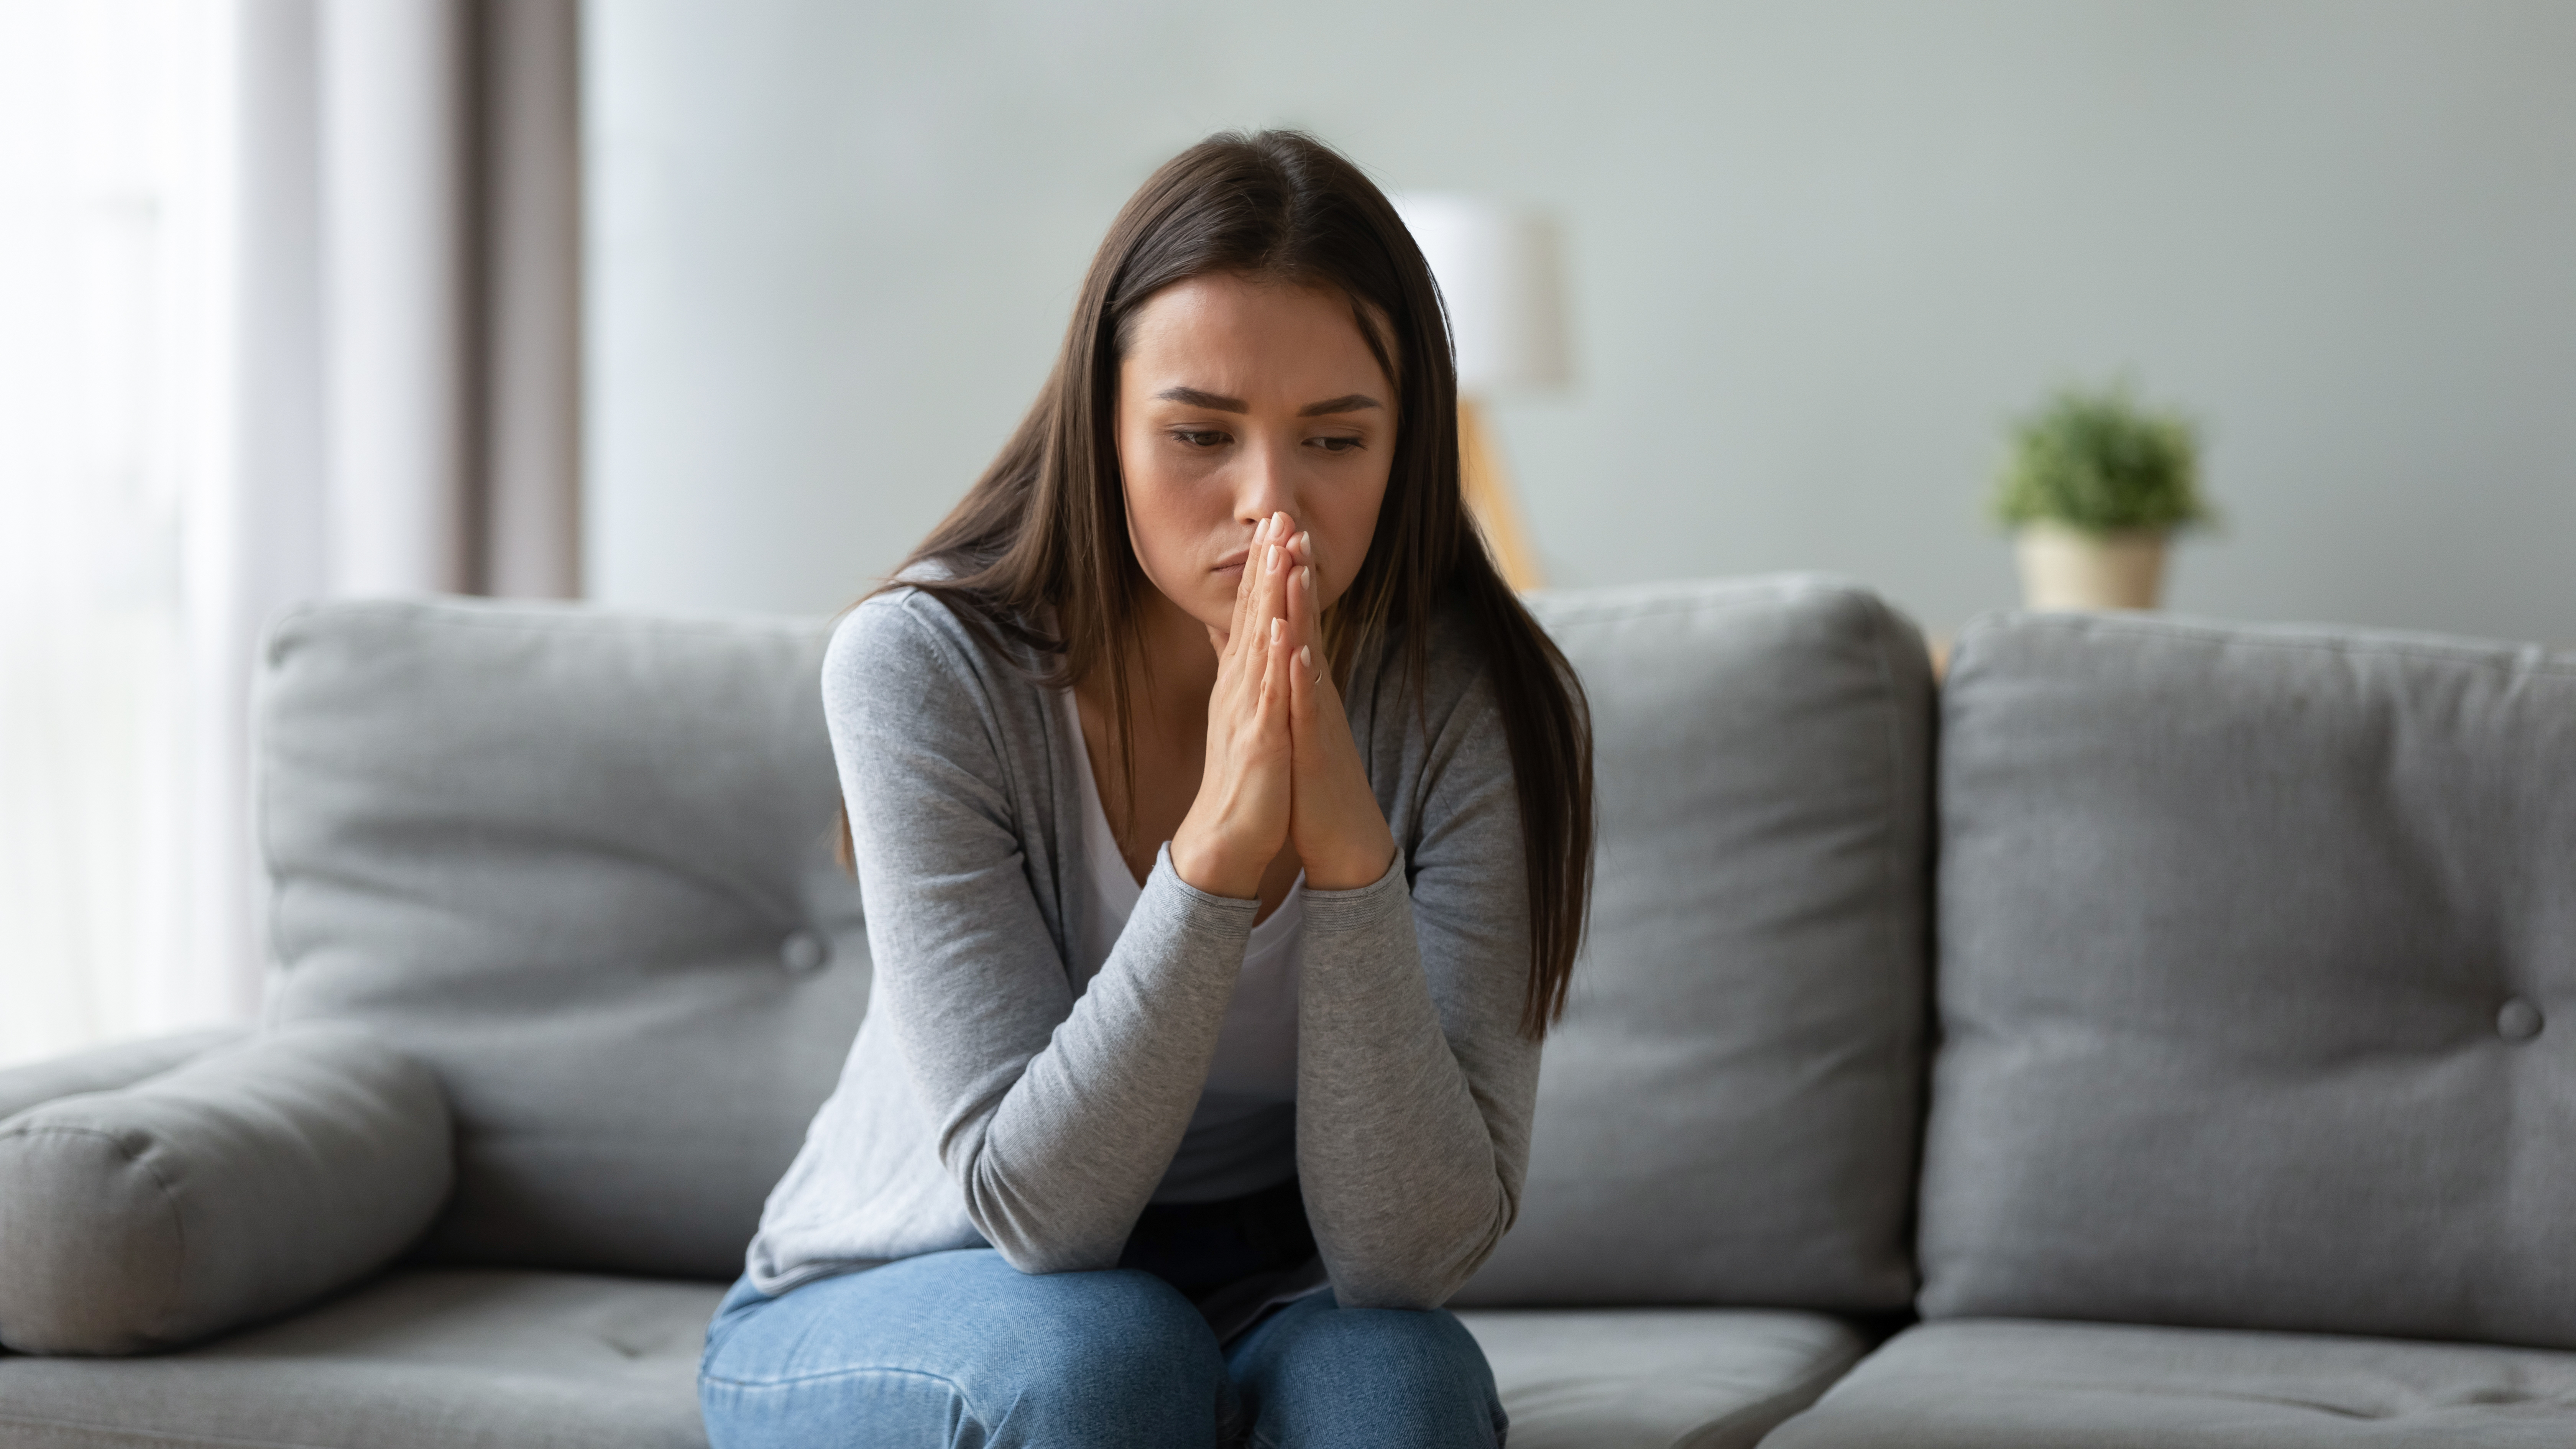 Eine verzweifelte Frau sitzt auf dem Sofa | Quelle: Shutterstock